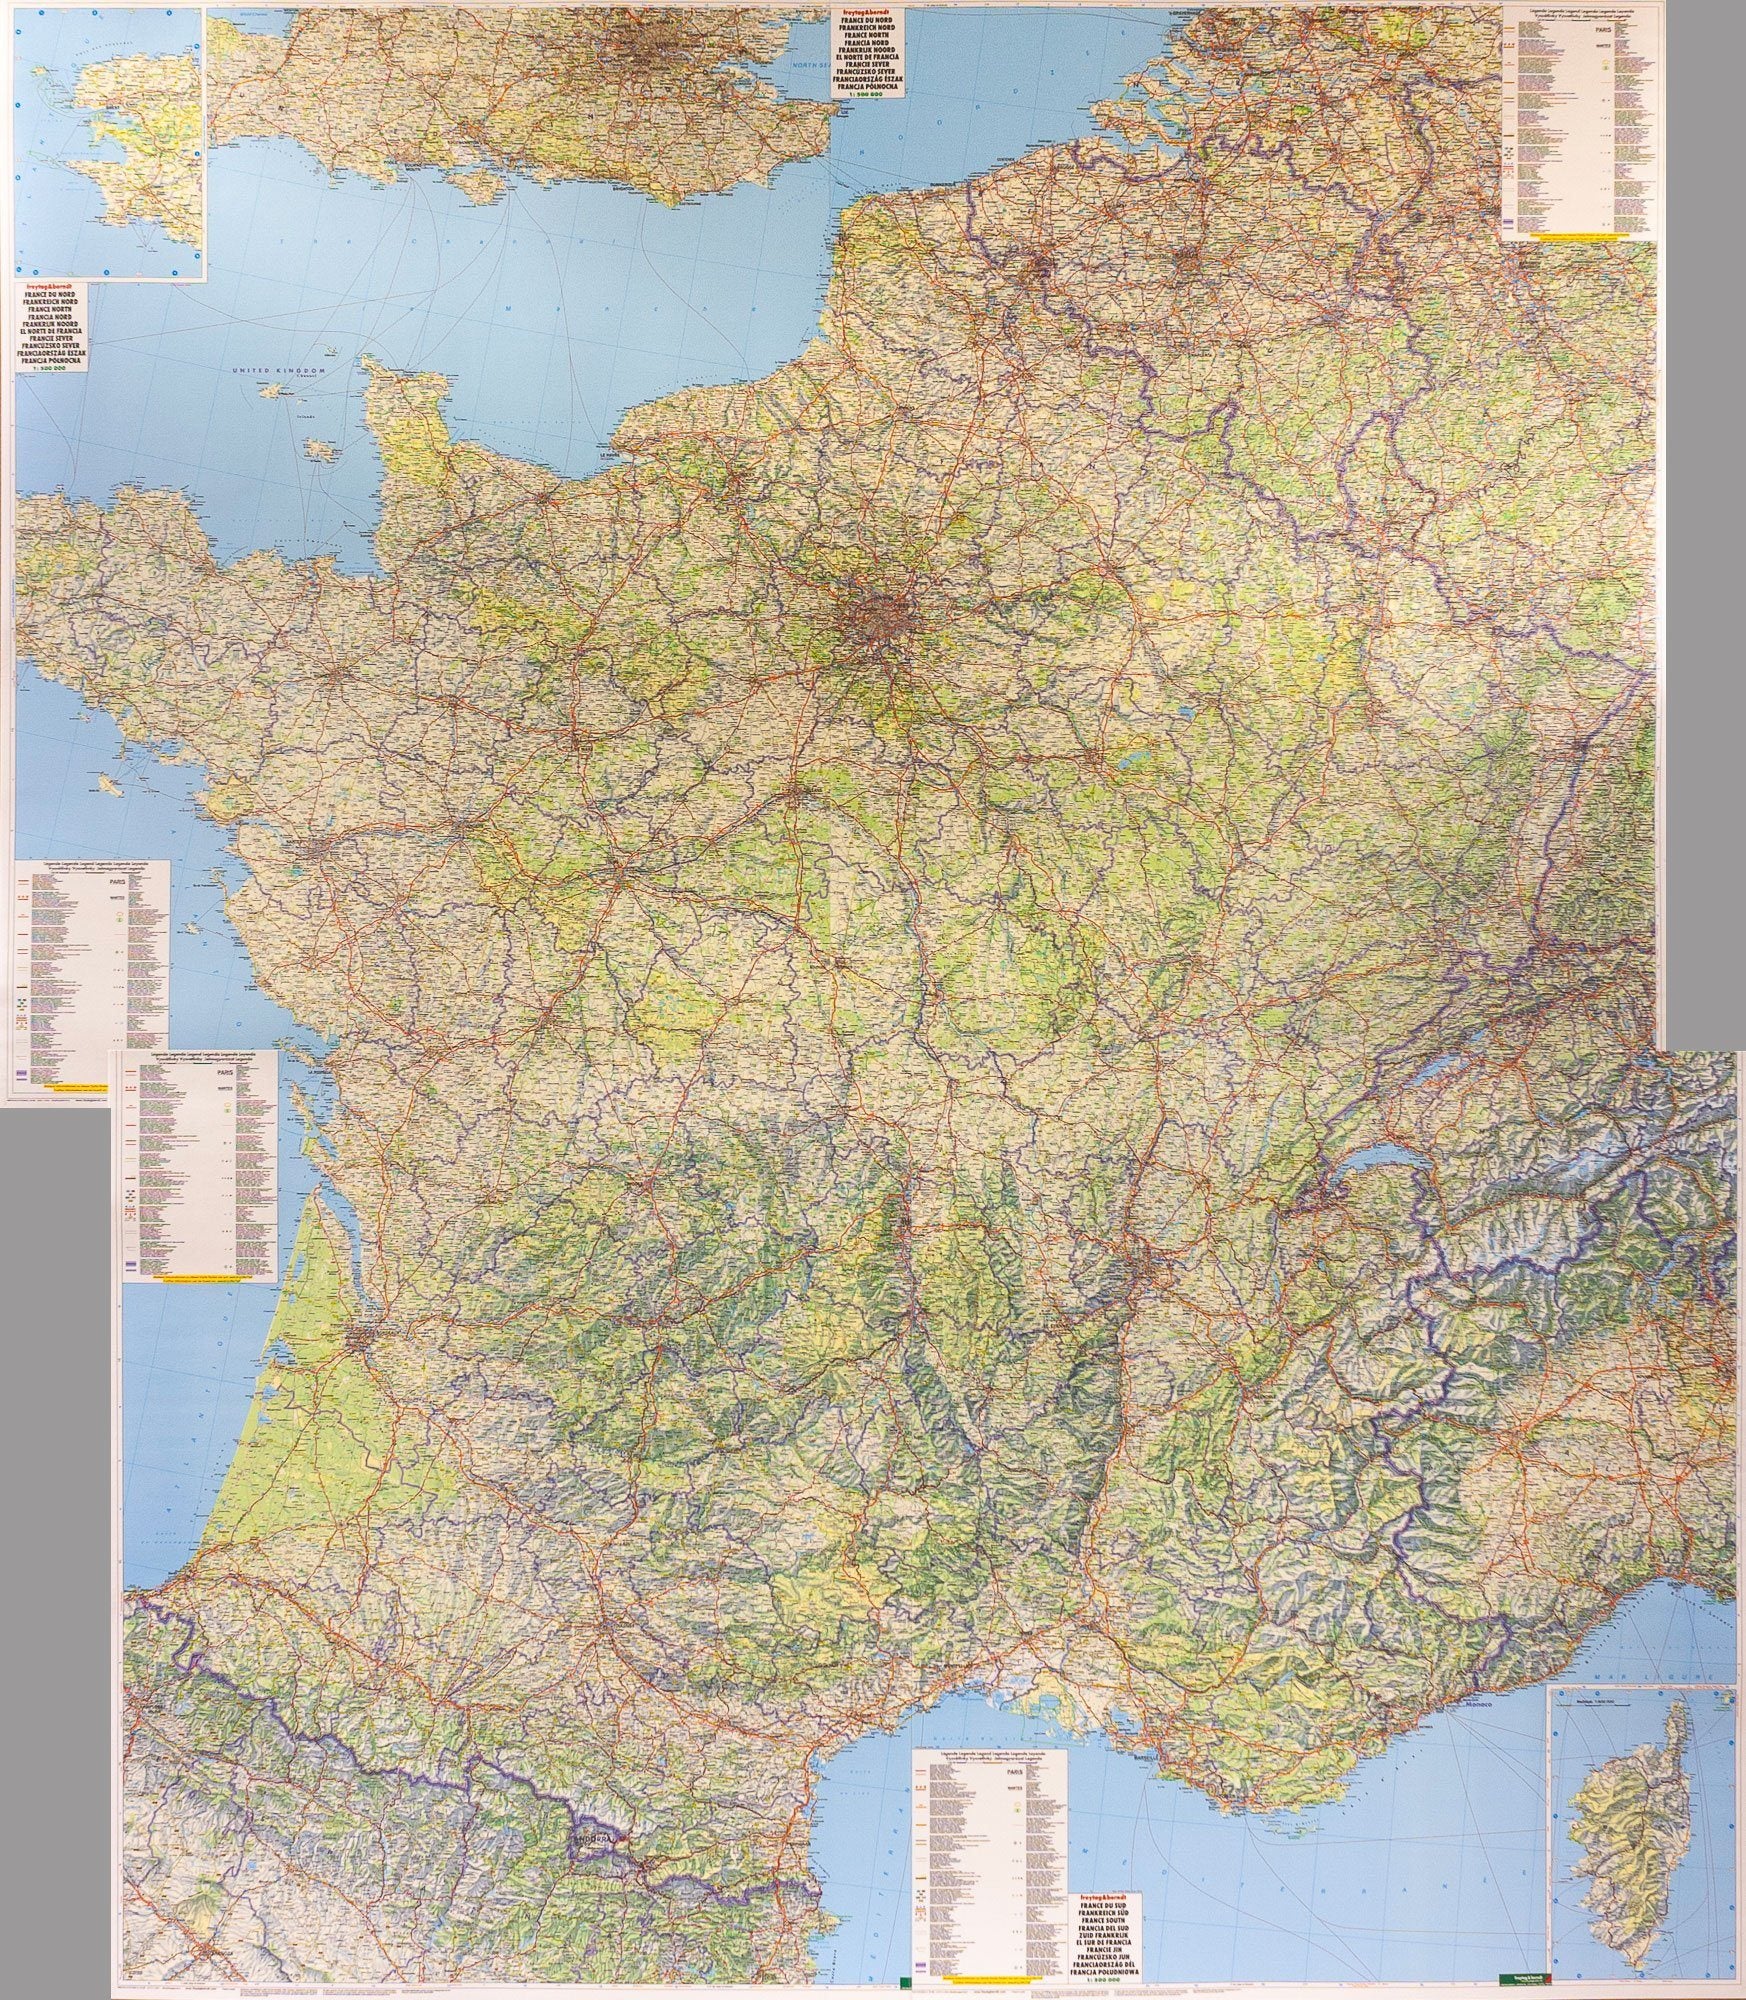 Poster France : Affiches de la Carte de France : grand format et plastifiées